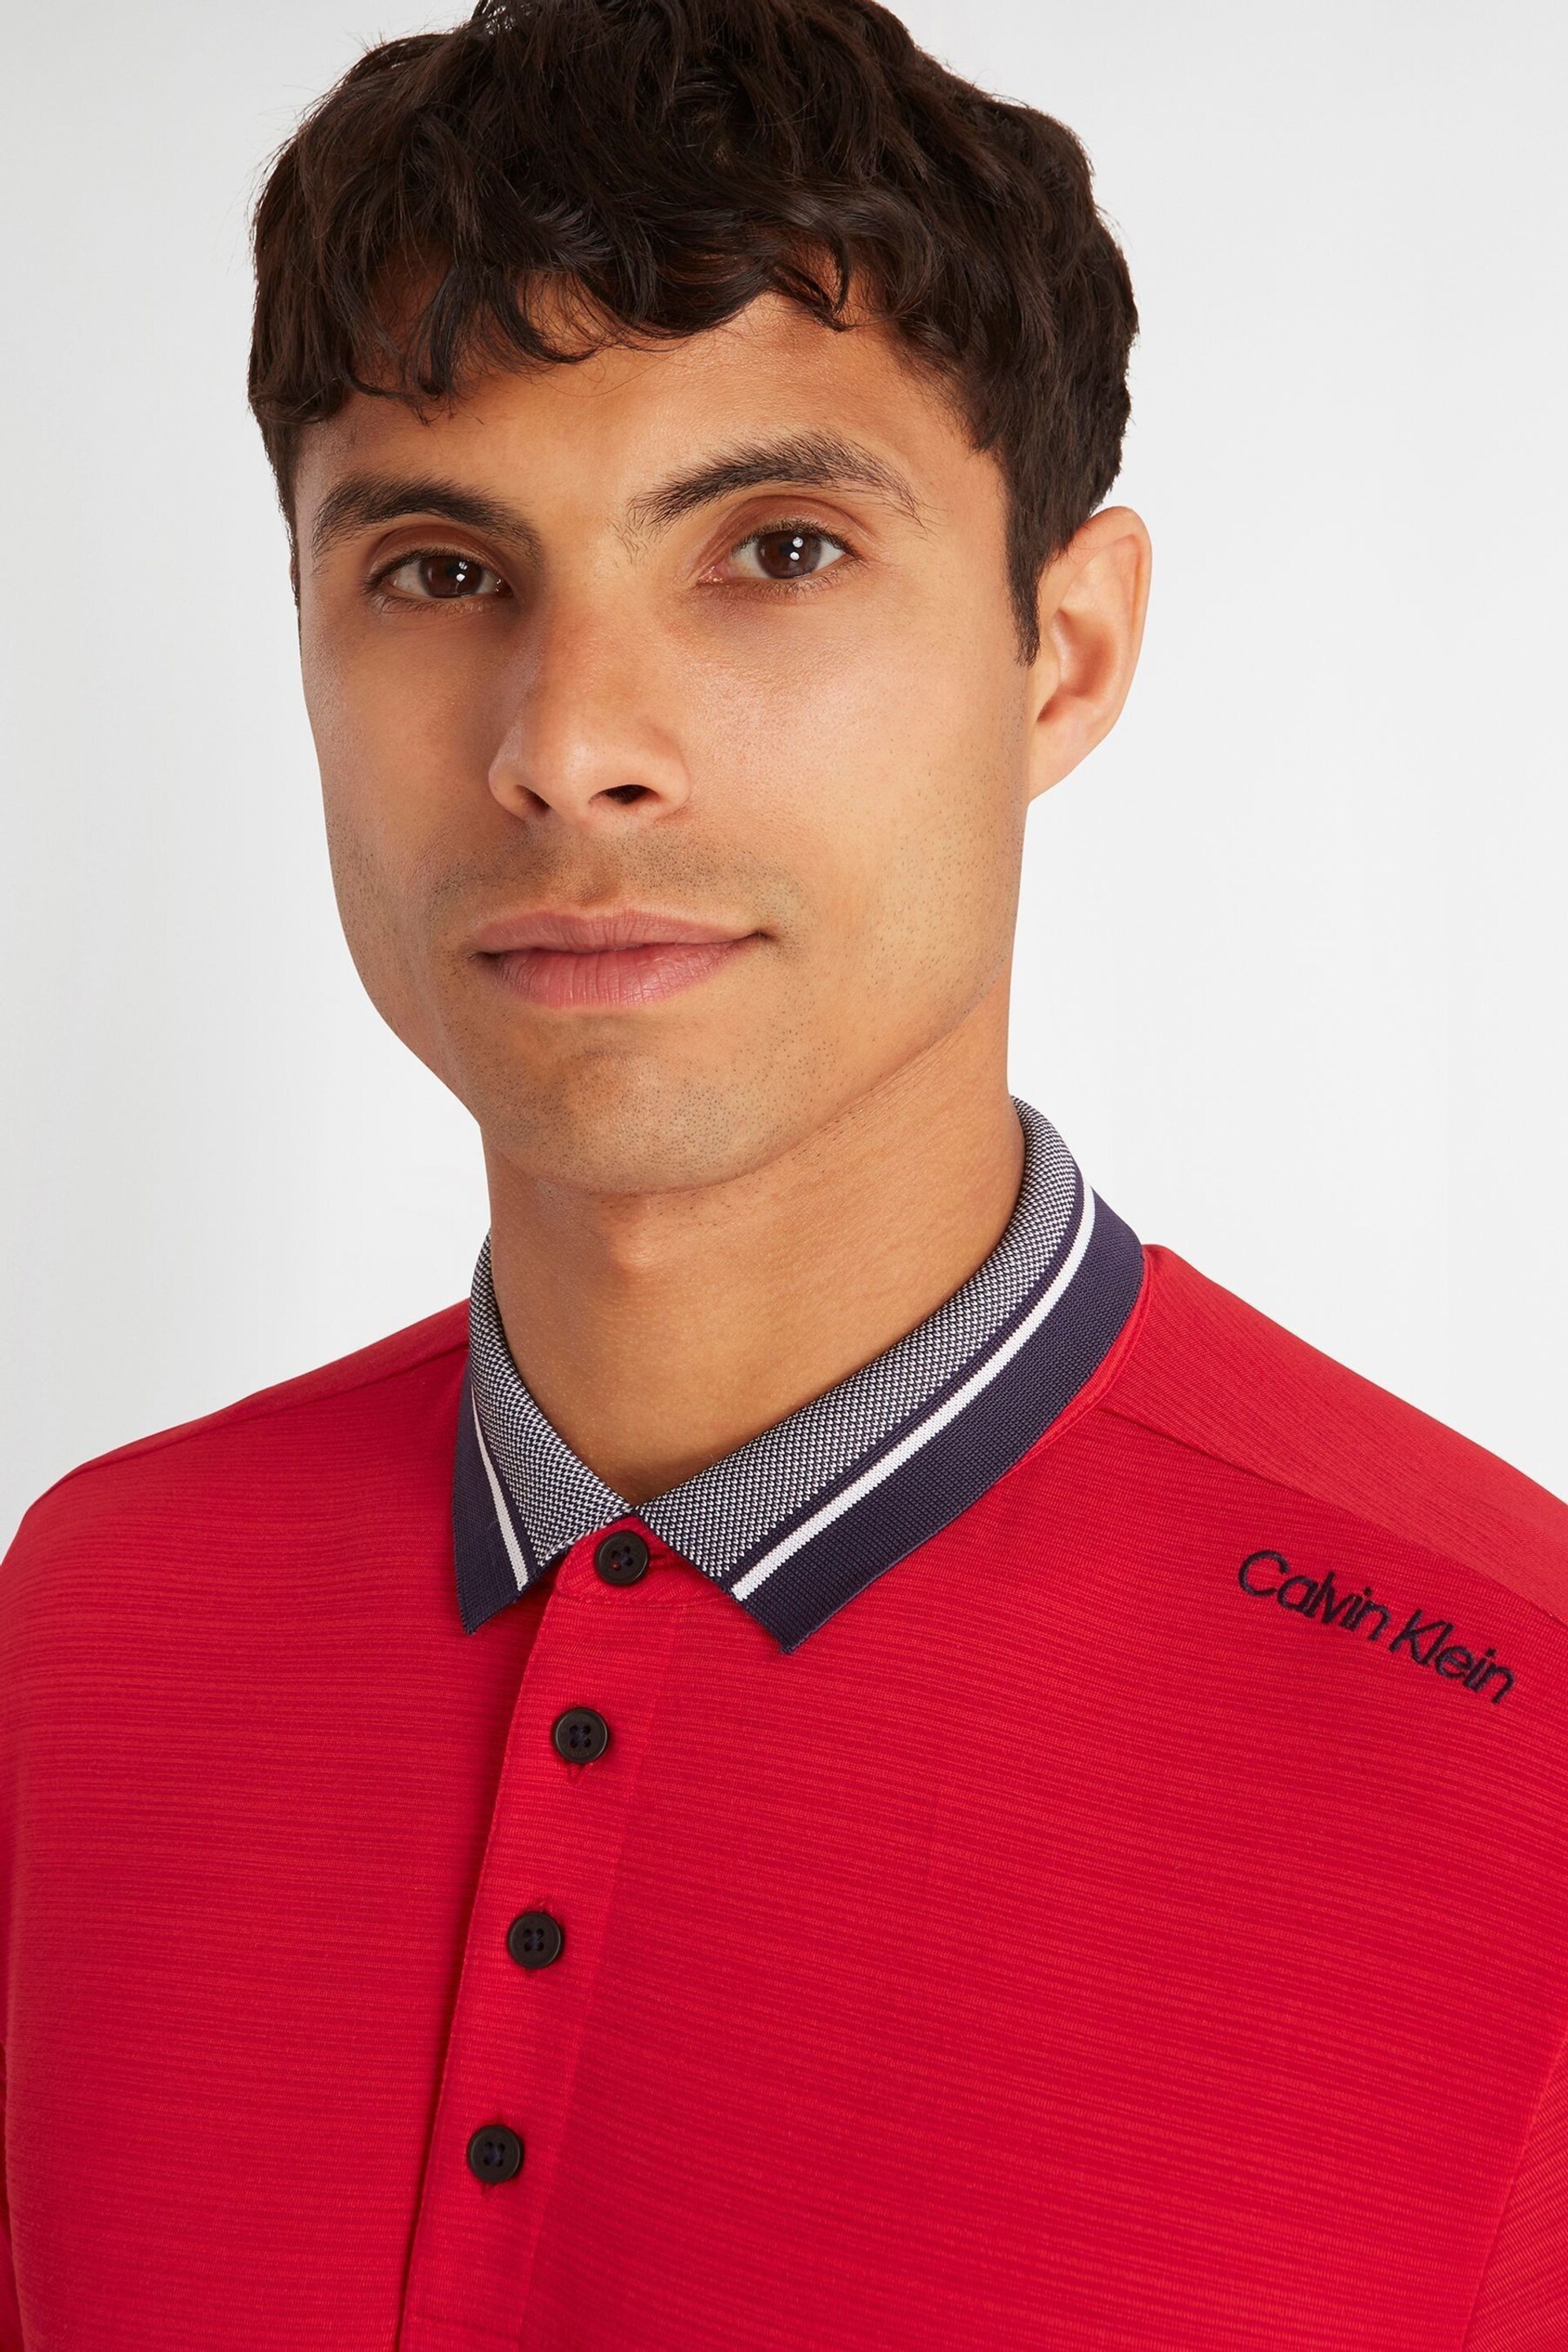 Calvin Klein Golf Navy Parramore Polo Shirt - Image 3 of 8